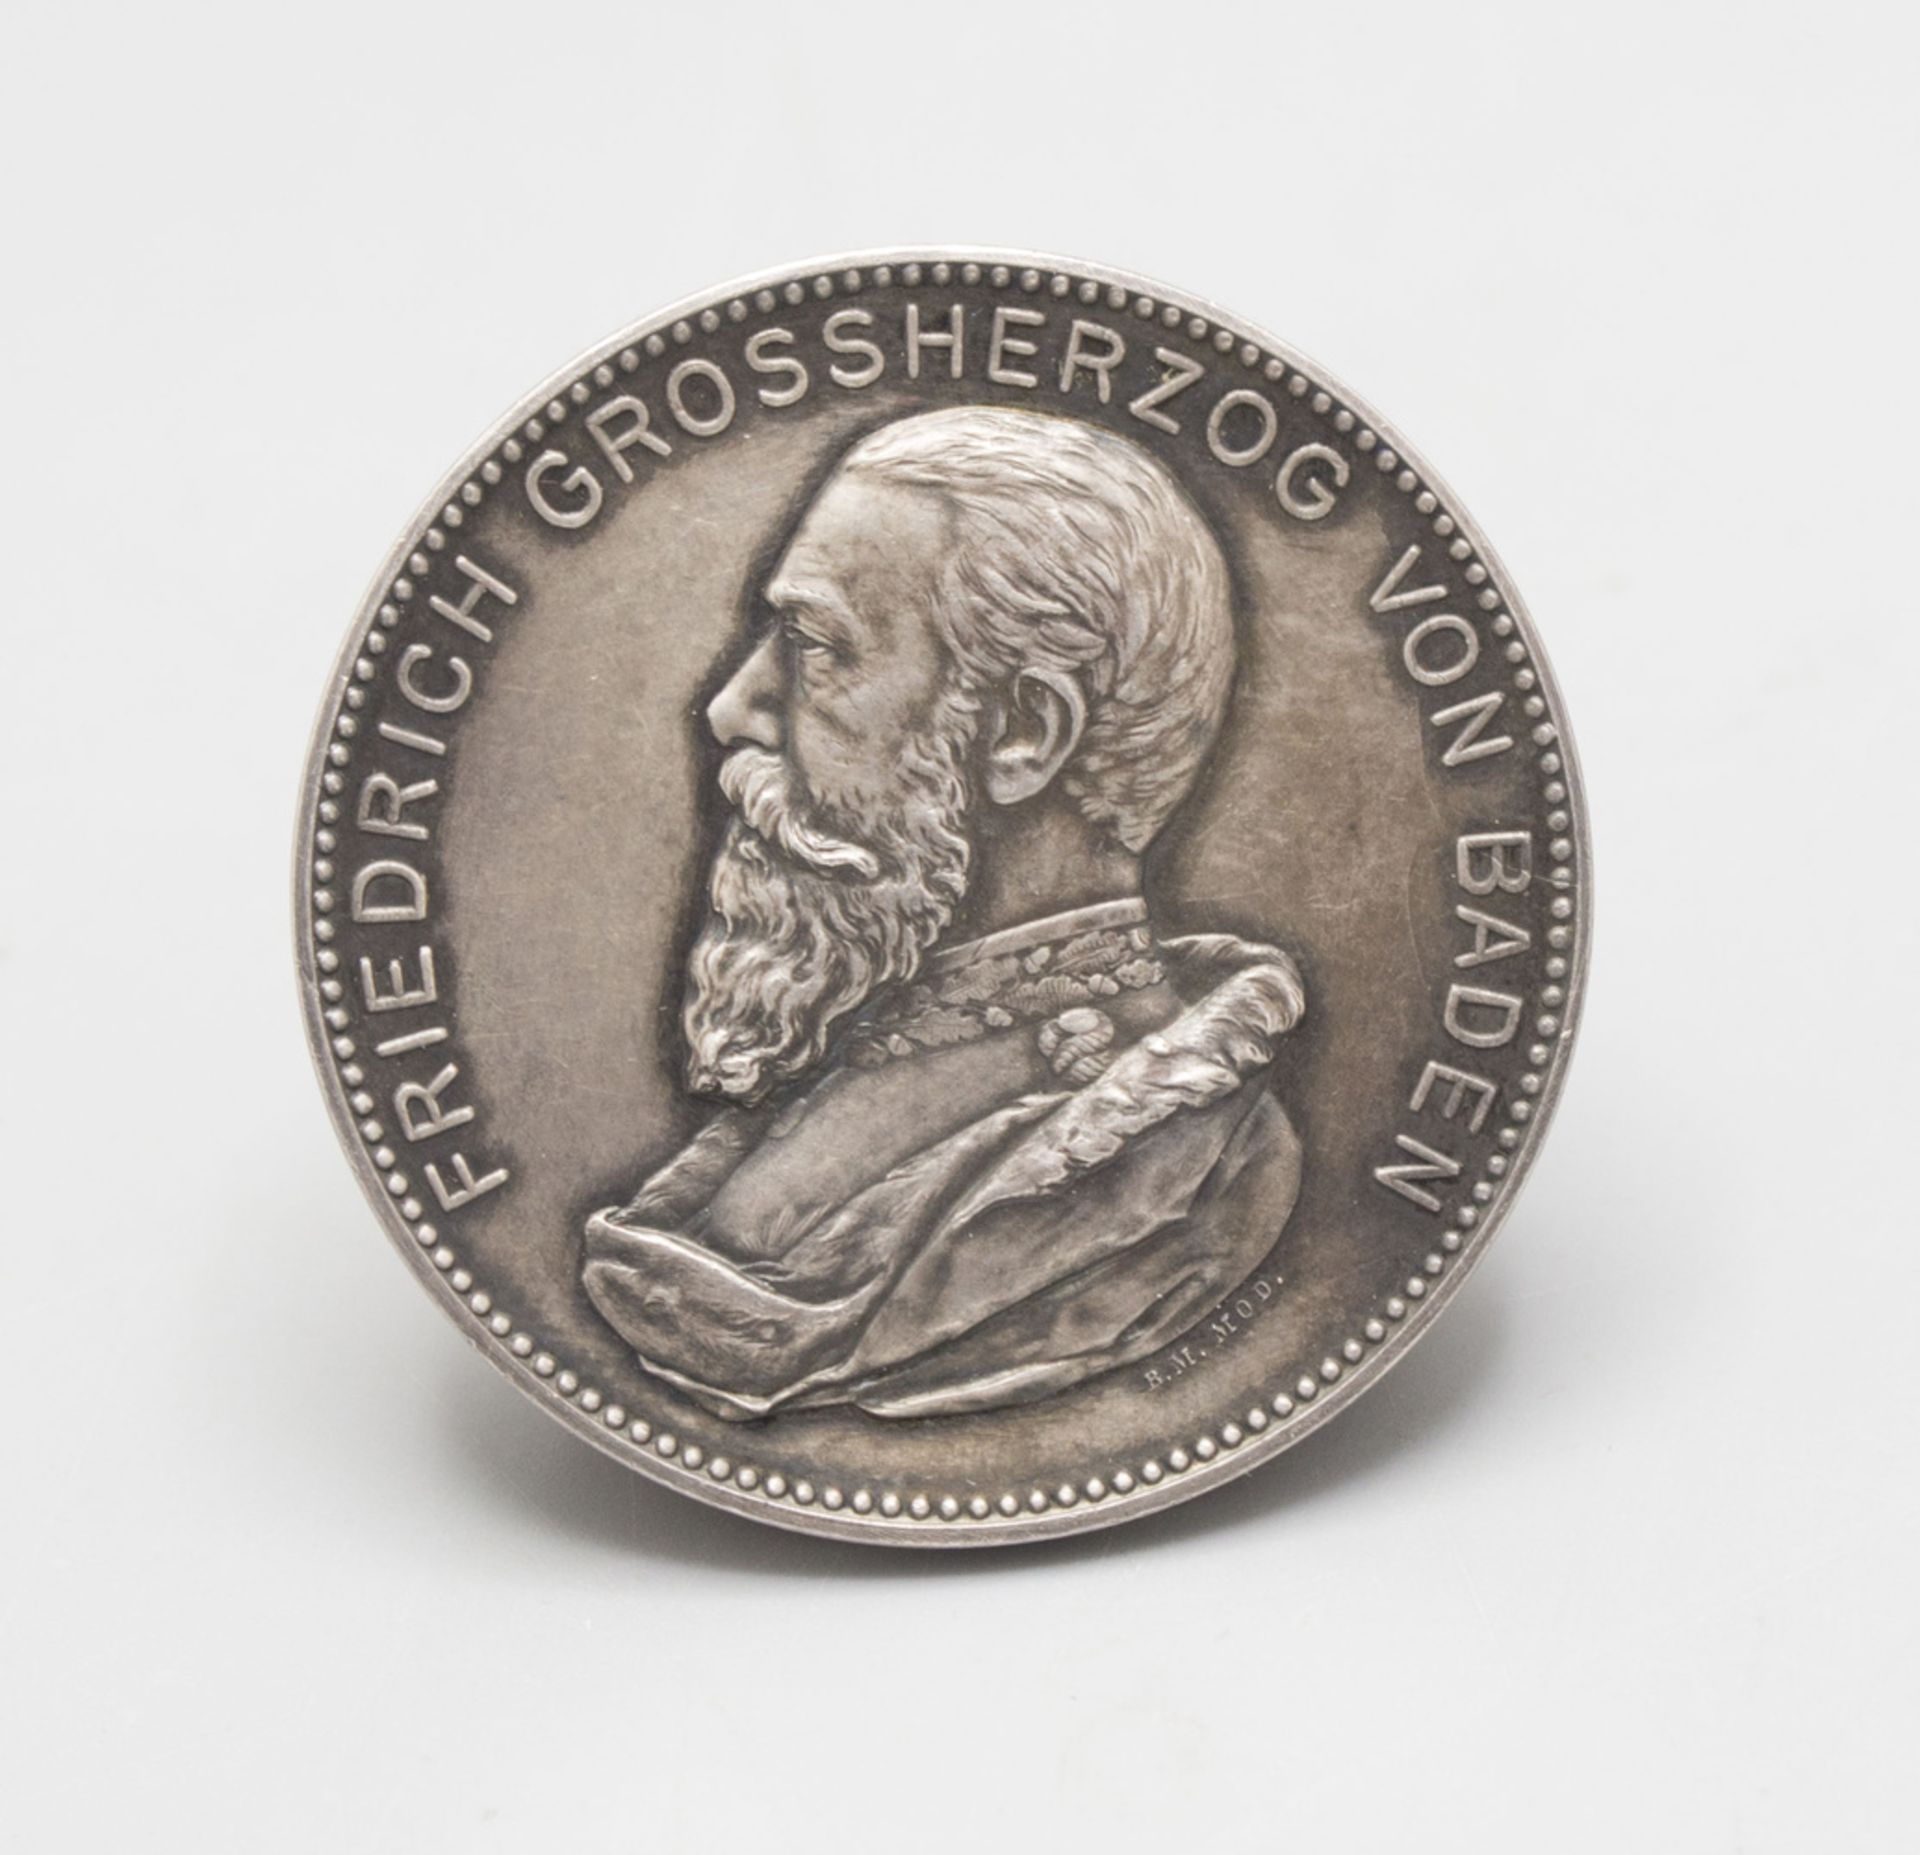 Mannheim Medaille Verbandsschießen, 1896